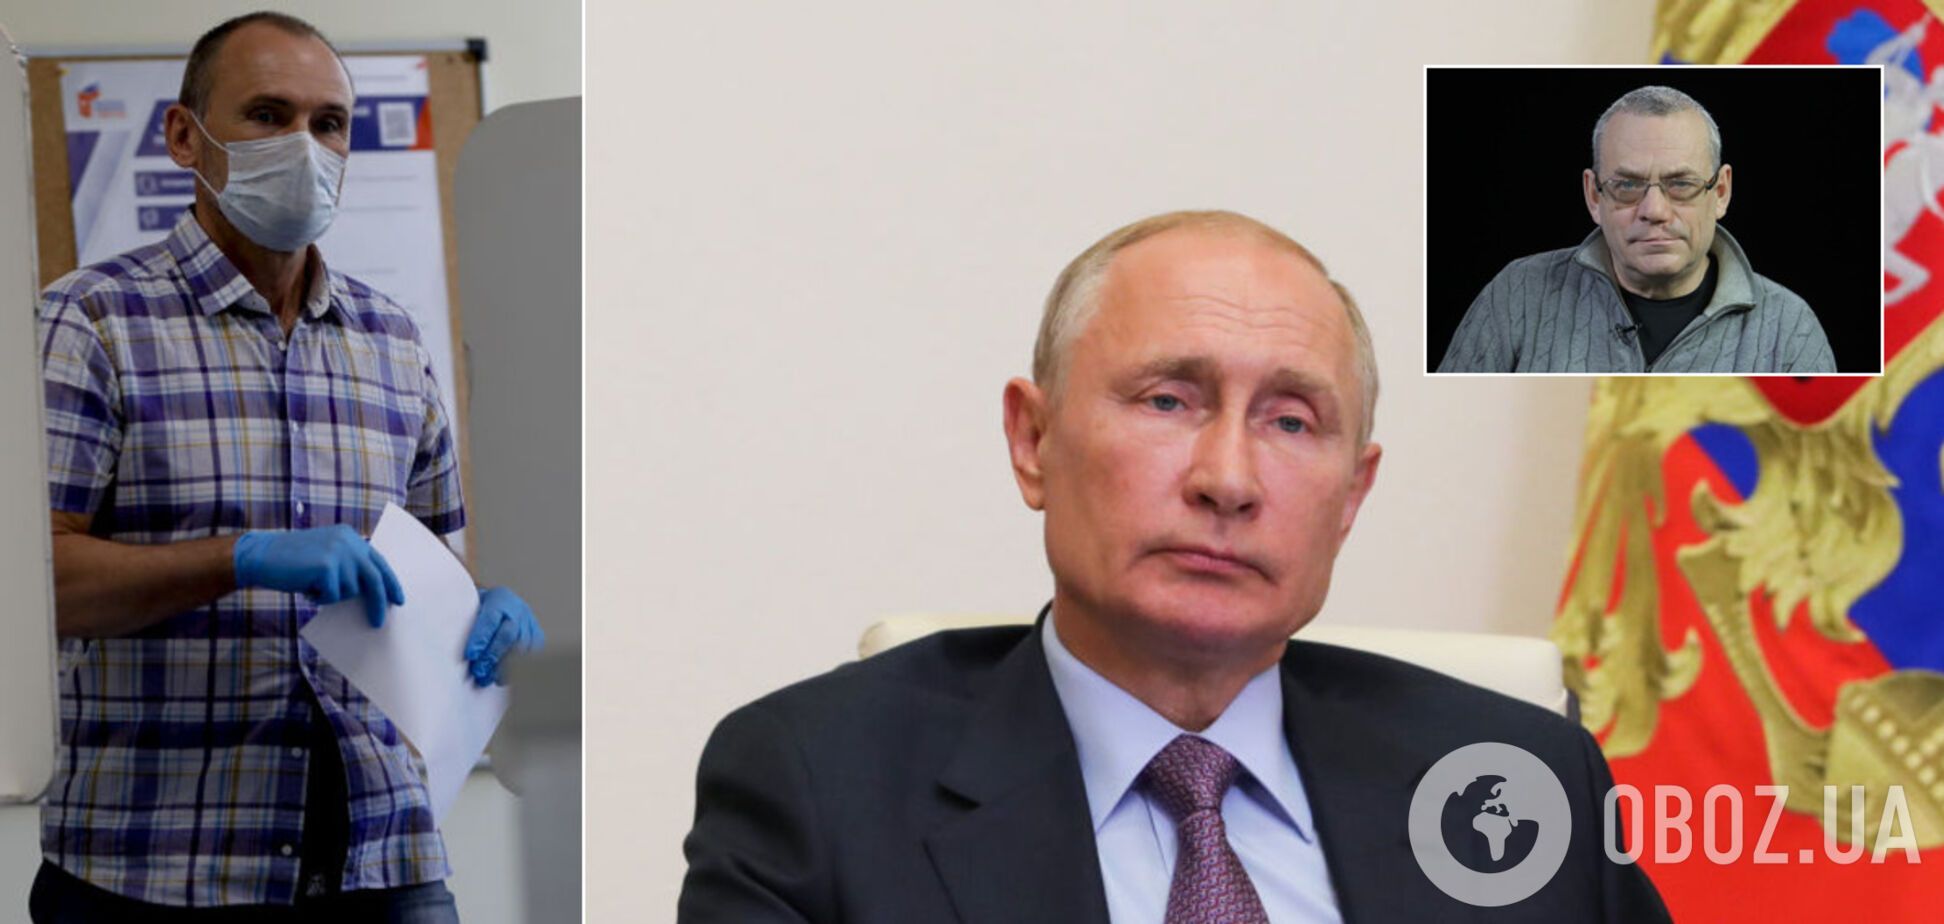 'Путин не станет нормальным пенсионером, у него есть только три пути'. Интервью с российским оппозиционером